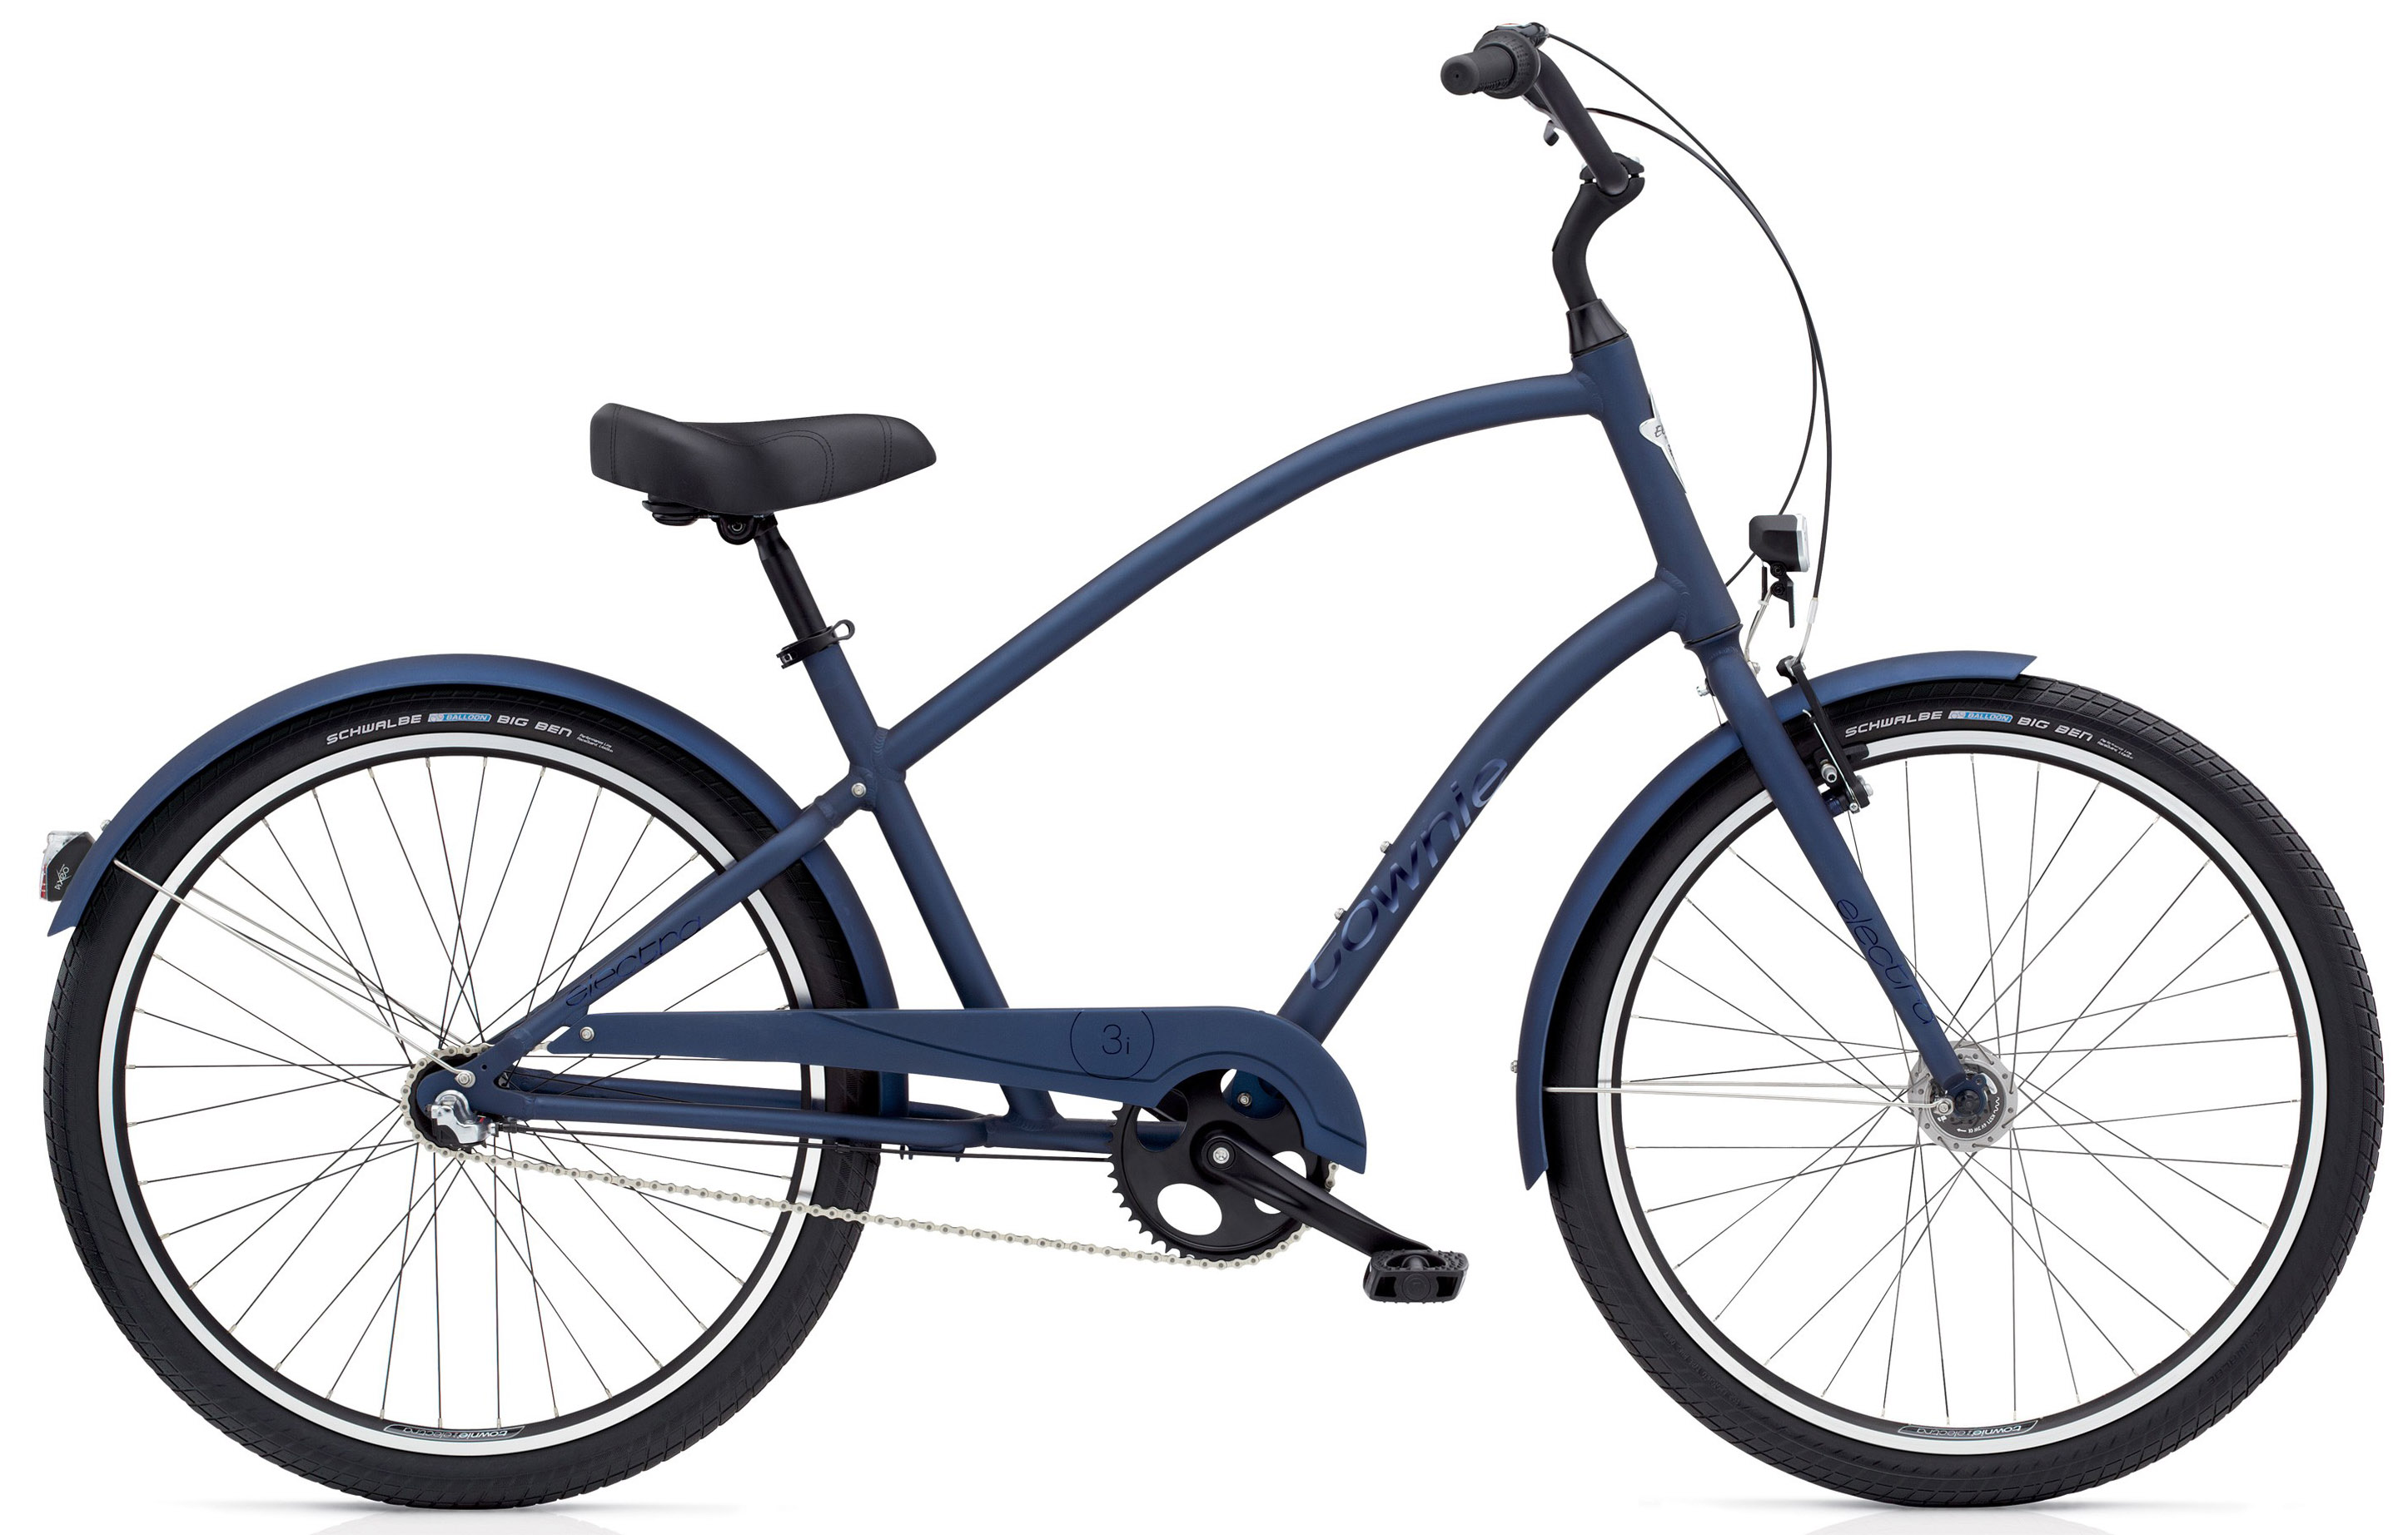  Отзывы о Велосипеде круизере Electra Townie Original 3i EQ Men's 2020